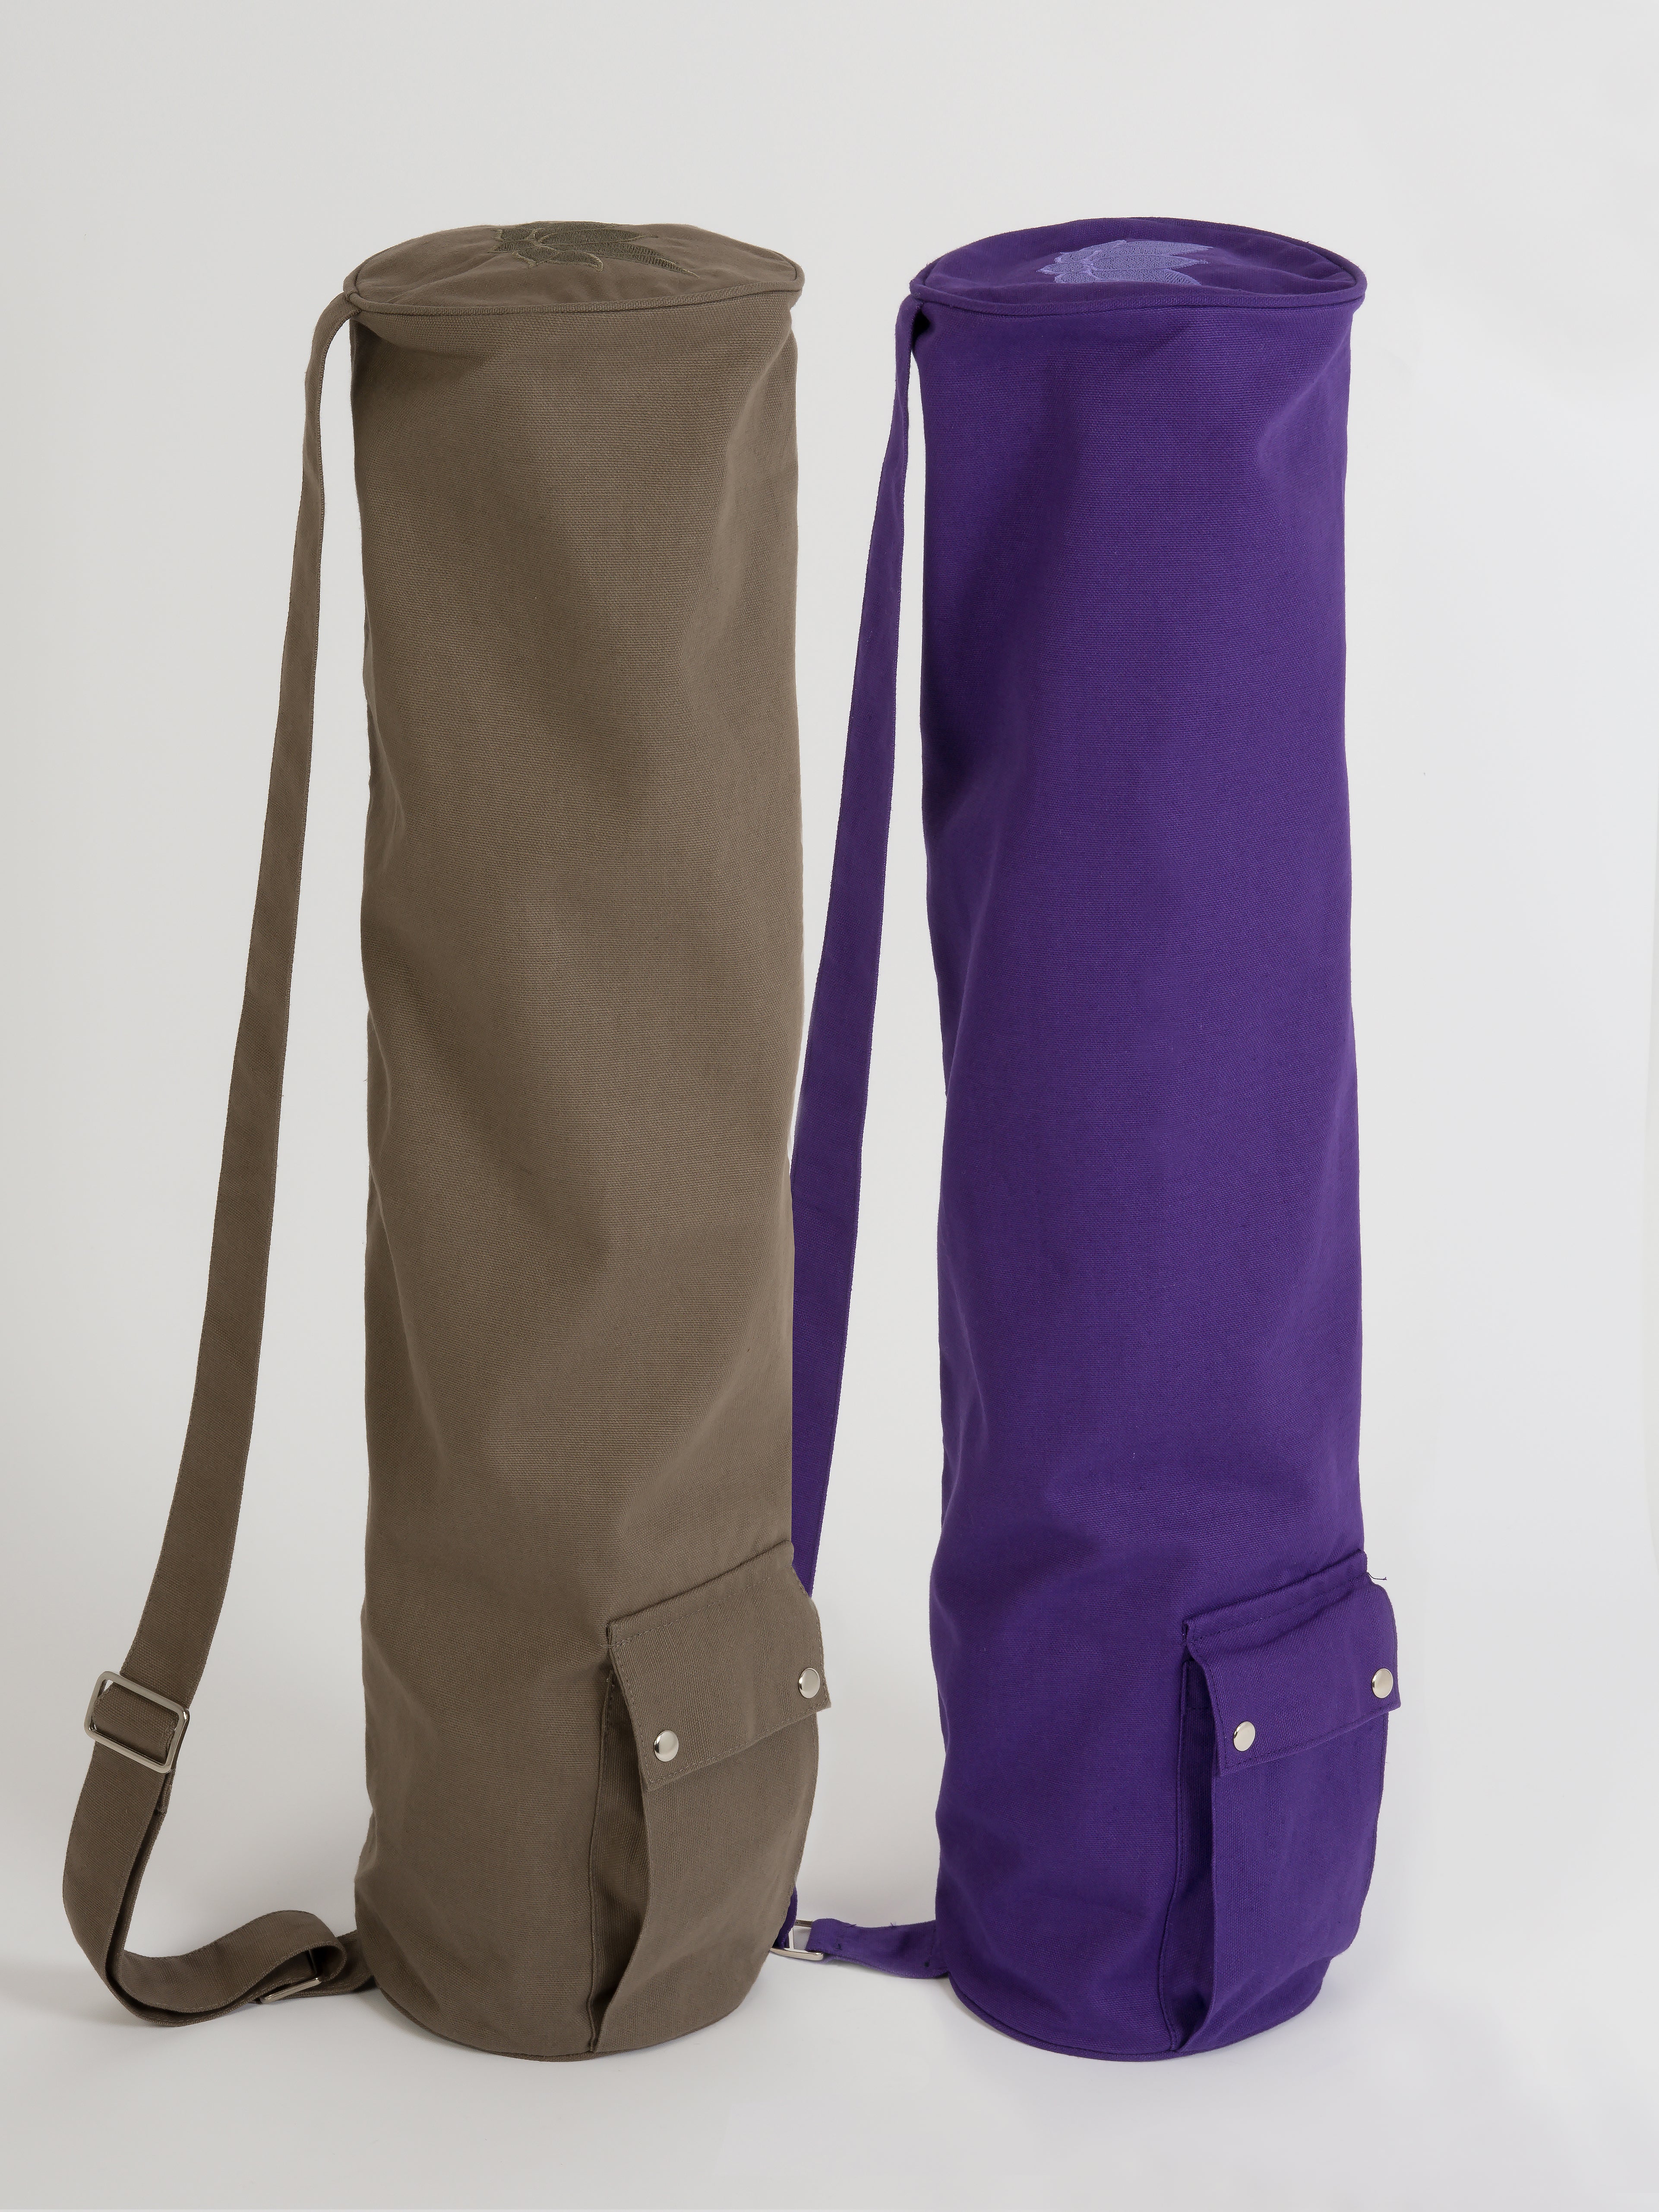 Yogamatters Organic Cotton Teachers Yoga Kit Bag